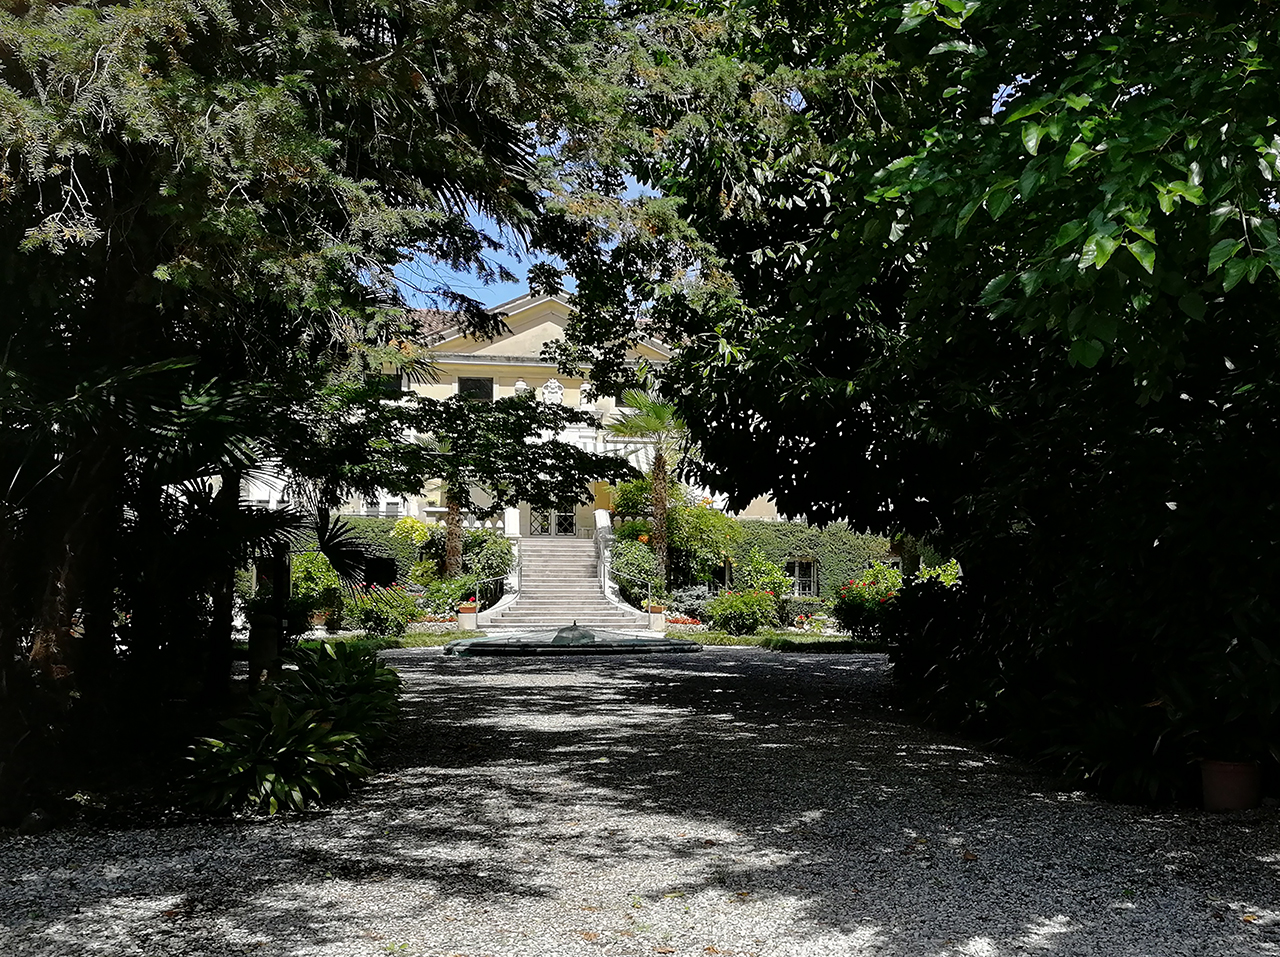 Villa Bresciani, Attems, Auersperg con giardino ed adiacenze (villa, privata) - Cervignano del Friuli (UD) 